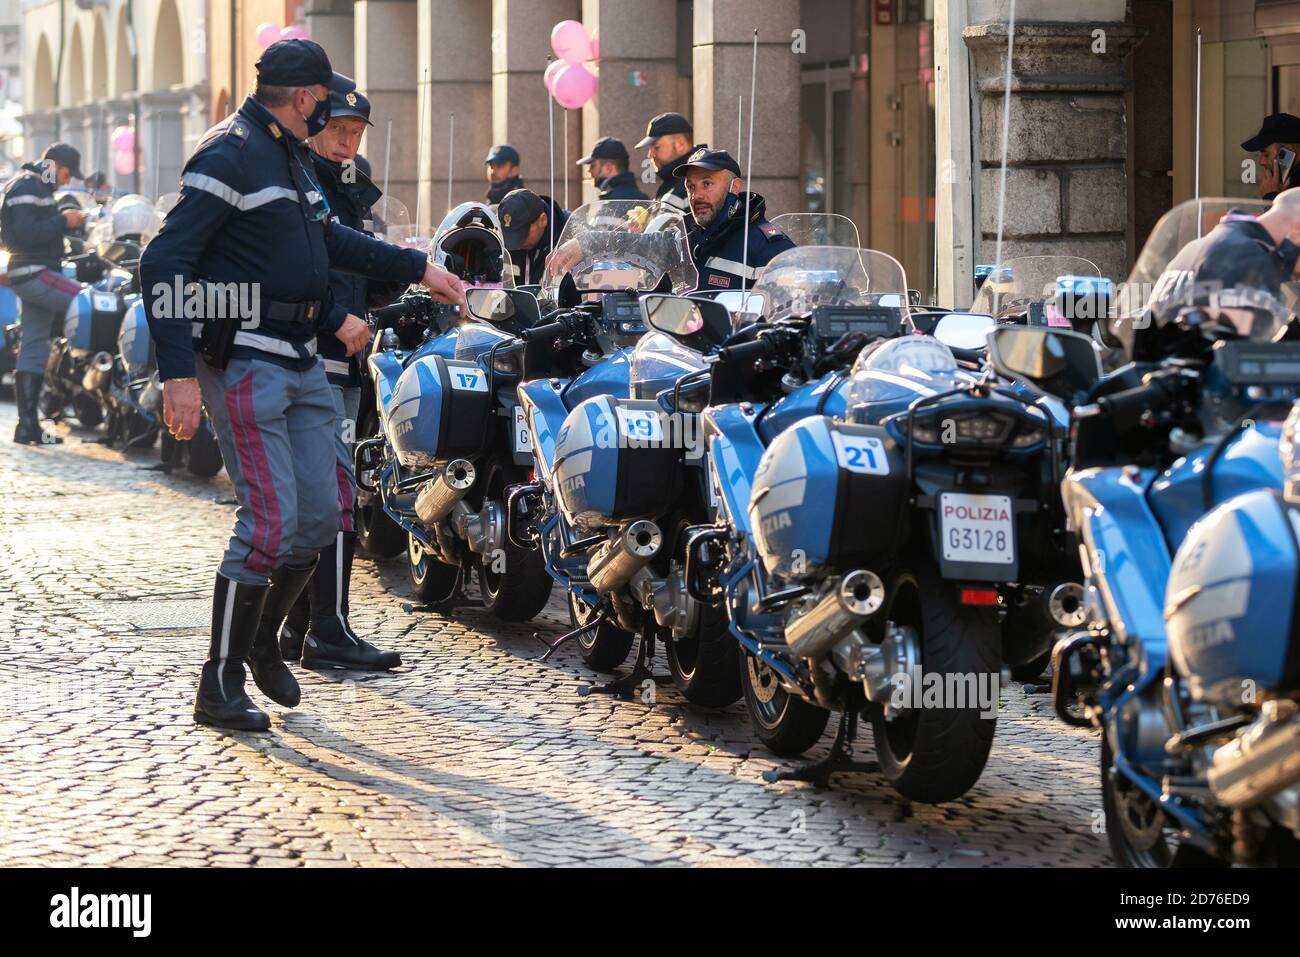 Groupe de policiers et de motos de police italiens dans une rue pavée. Udine, Italie. Banque D'Images